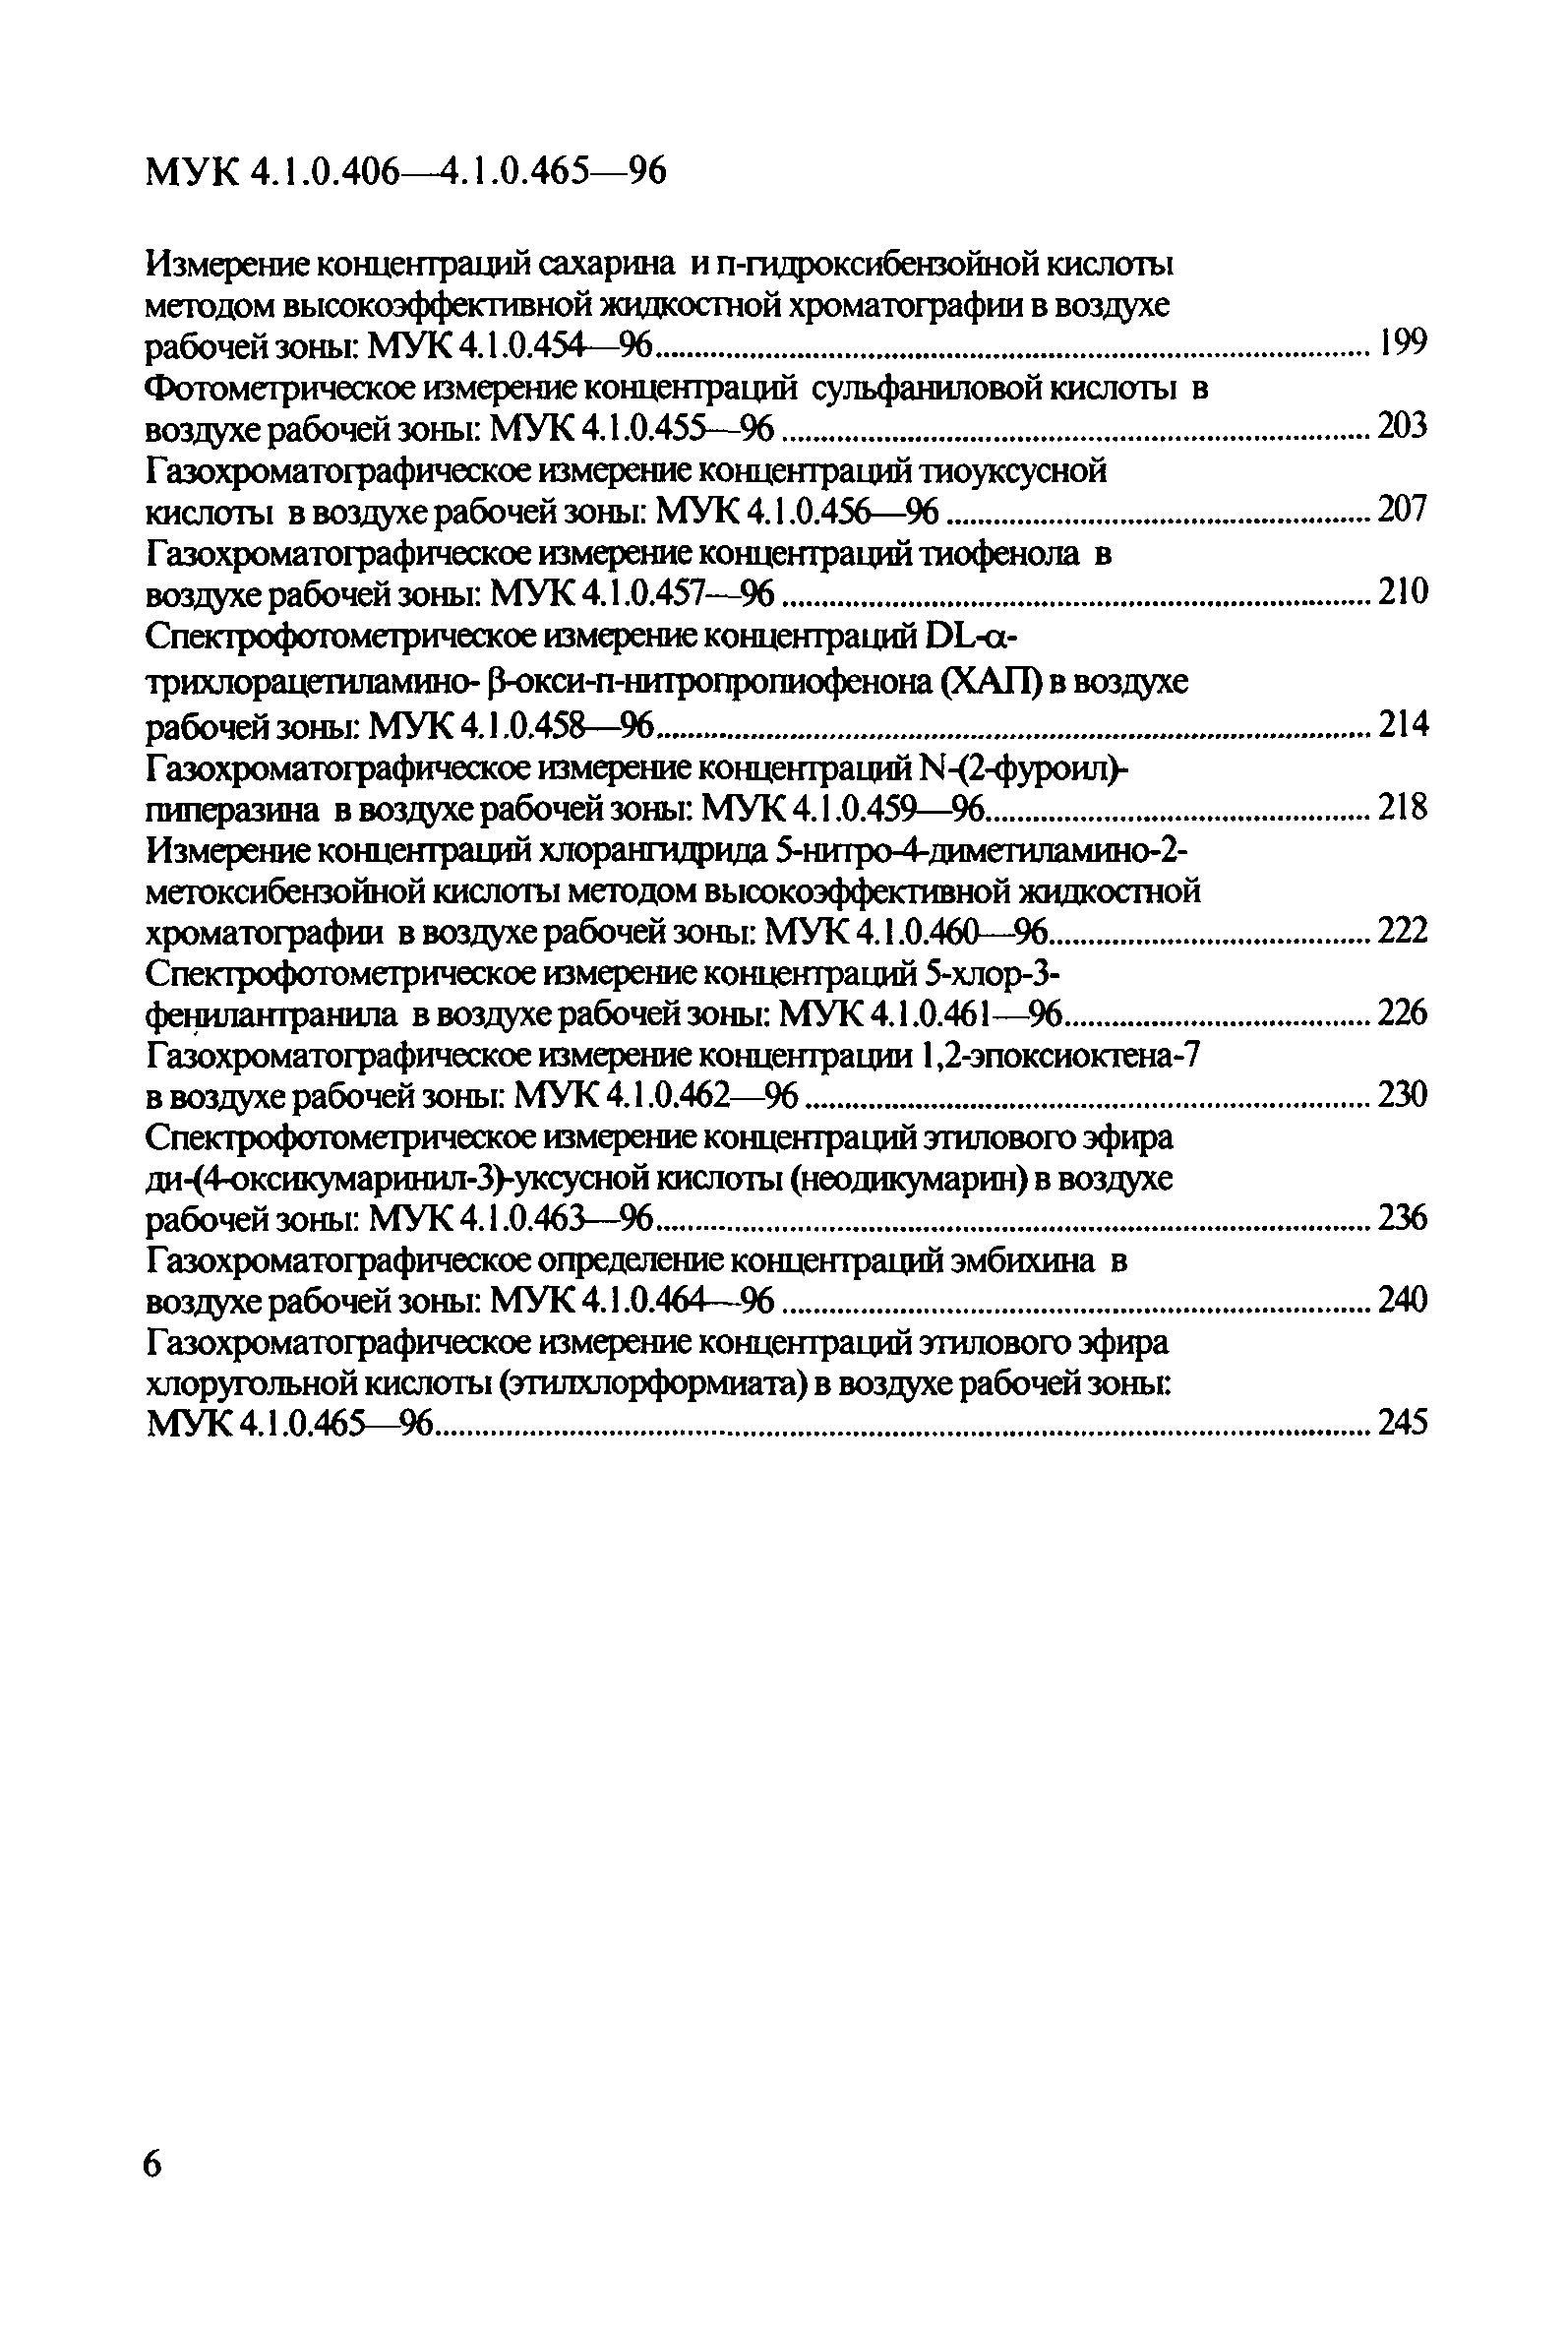 МУК 4.1.0.421-96